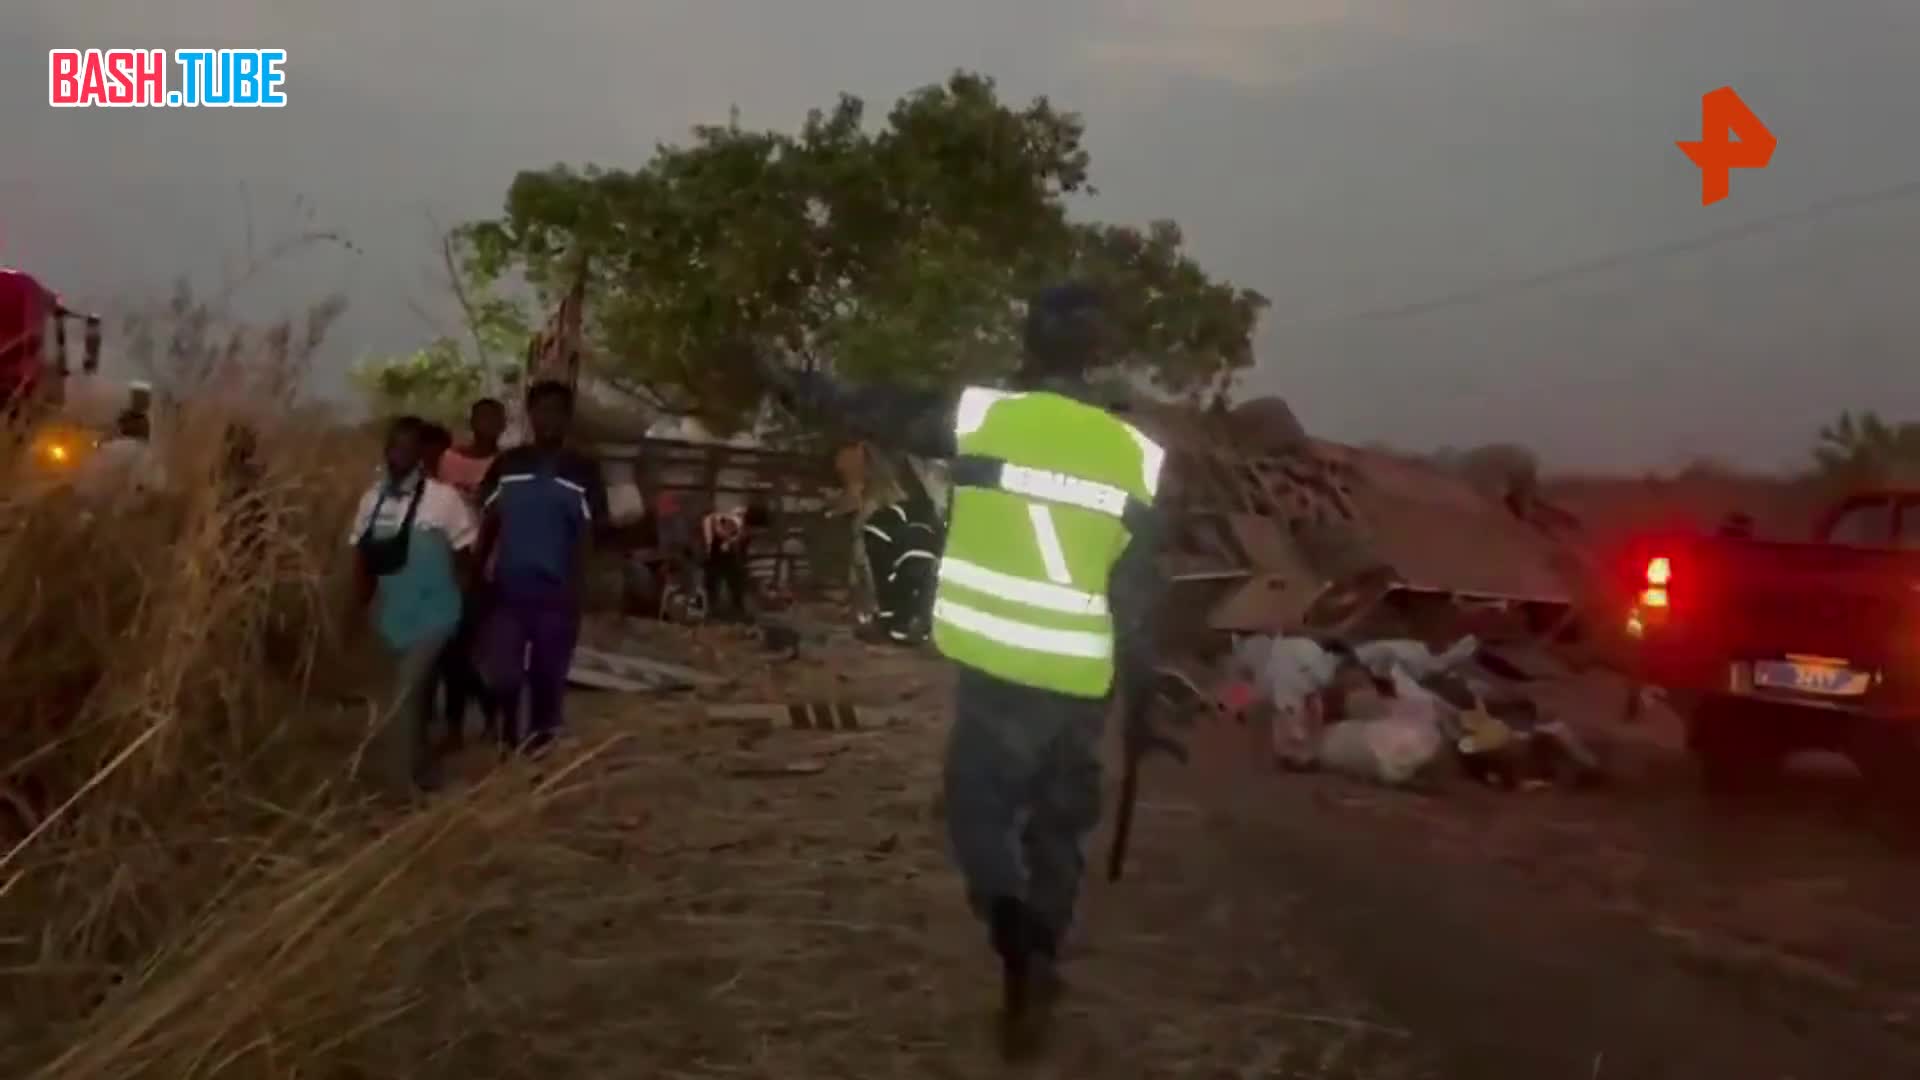  Как минимум 13 человек погибли в результате аварии в Коунгхеуле в Сенегале, где перевернулся общественный автобус